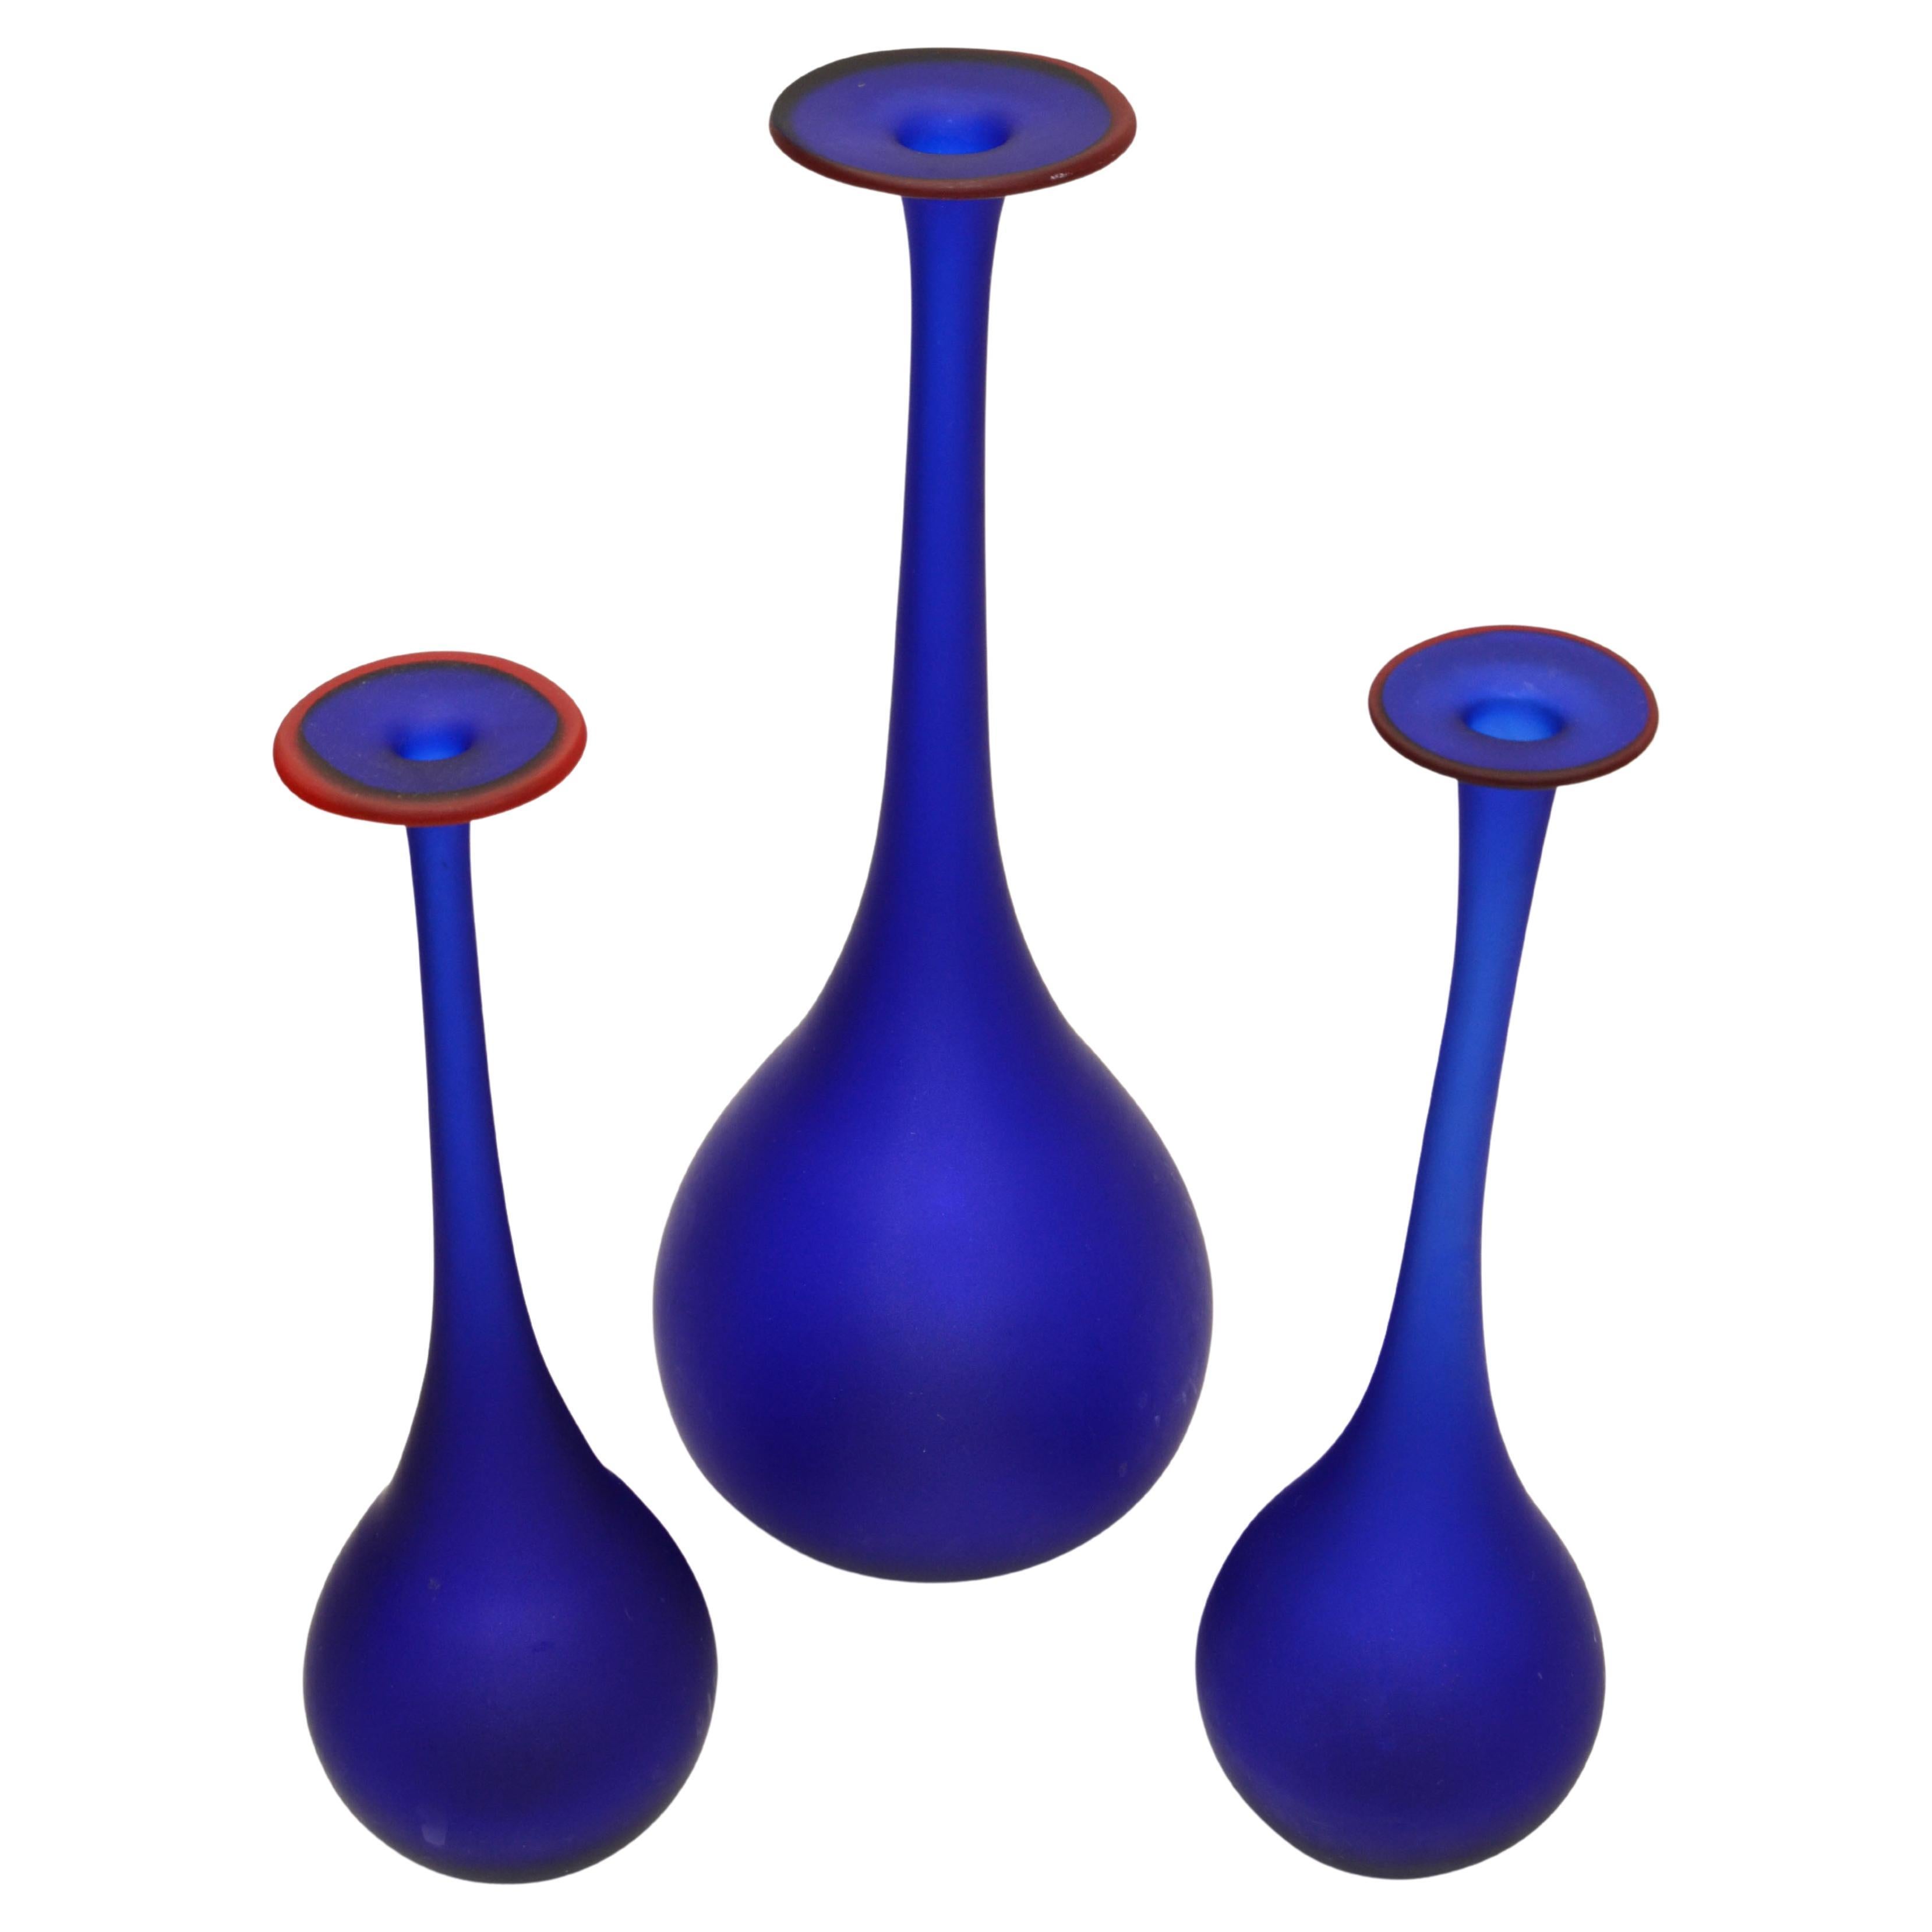 3 verschachtelte Vasen aus durchscheinendem blauem und rotem Satinglas in Moretti-Stil, Knospenvasen, Italien